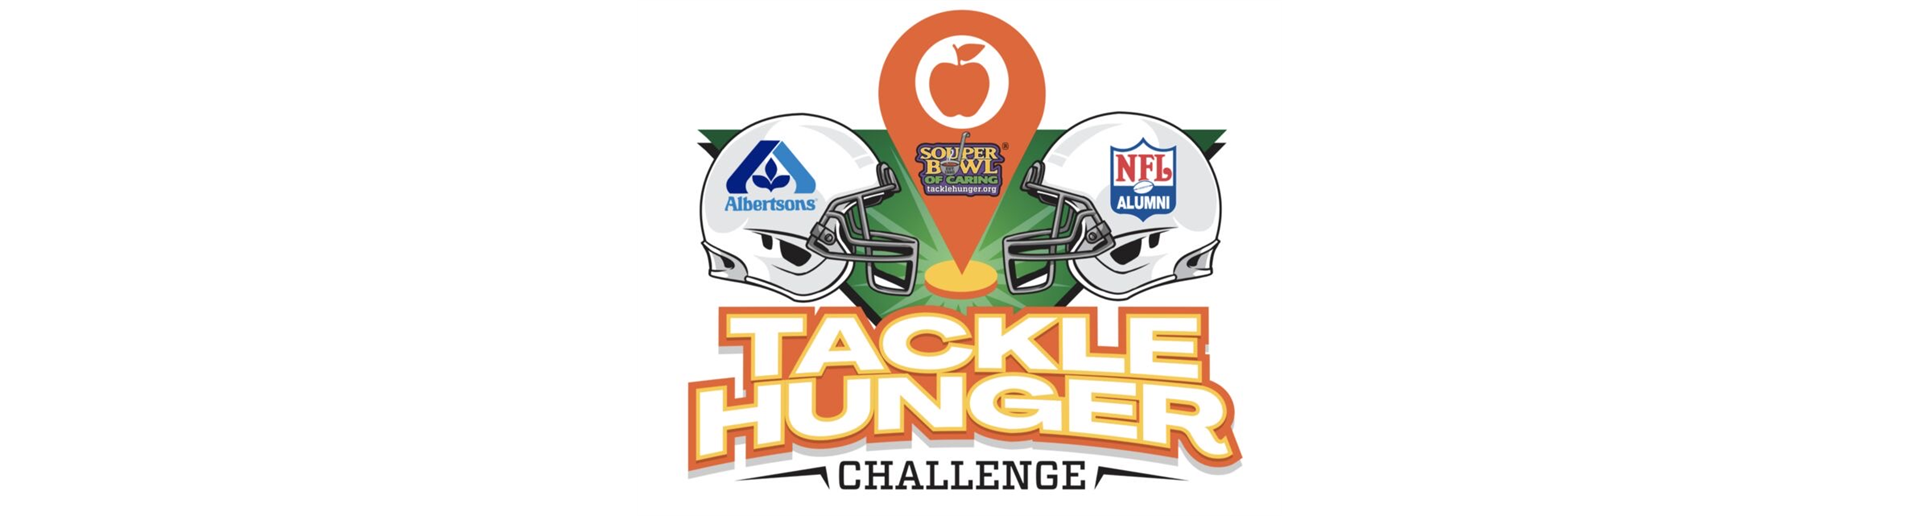 Tackle Hunger Challenge 